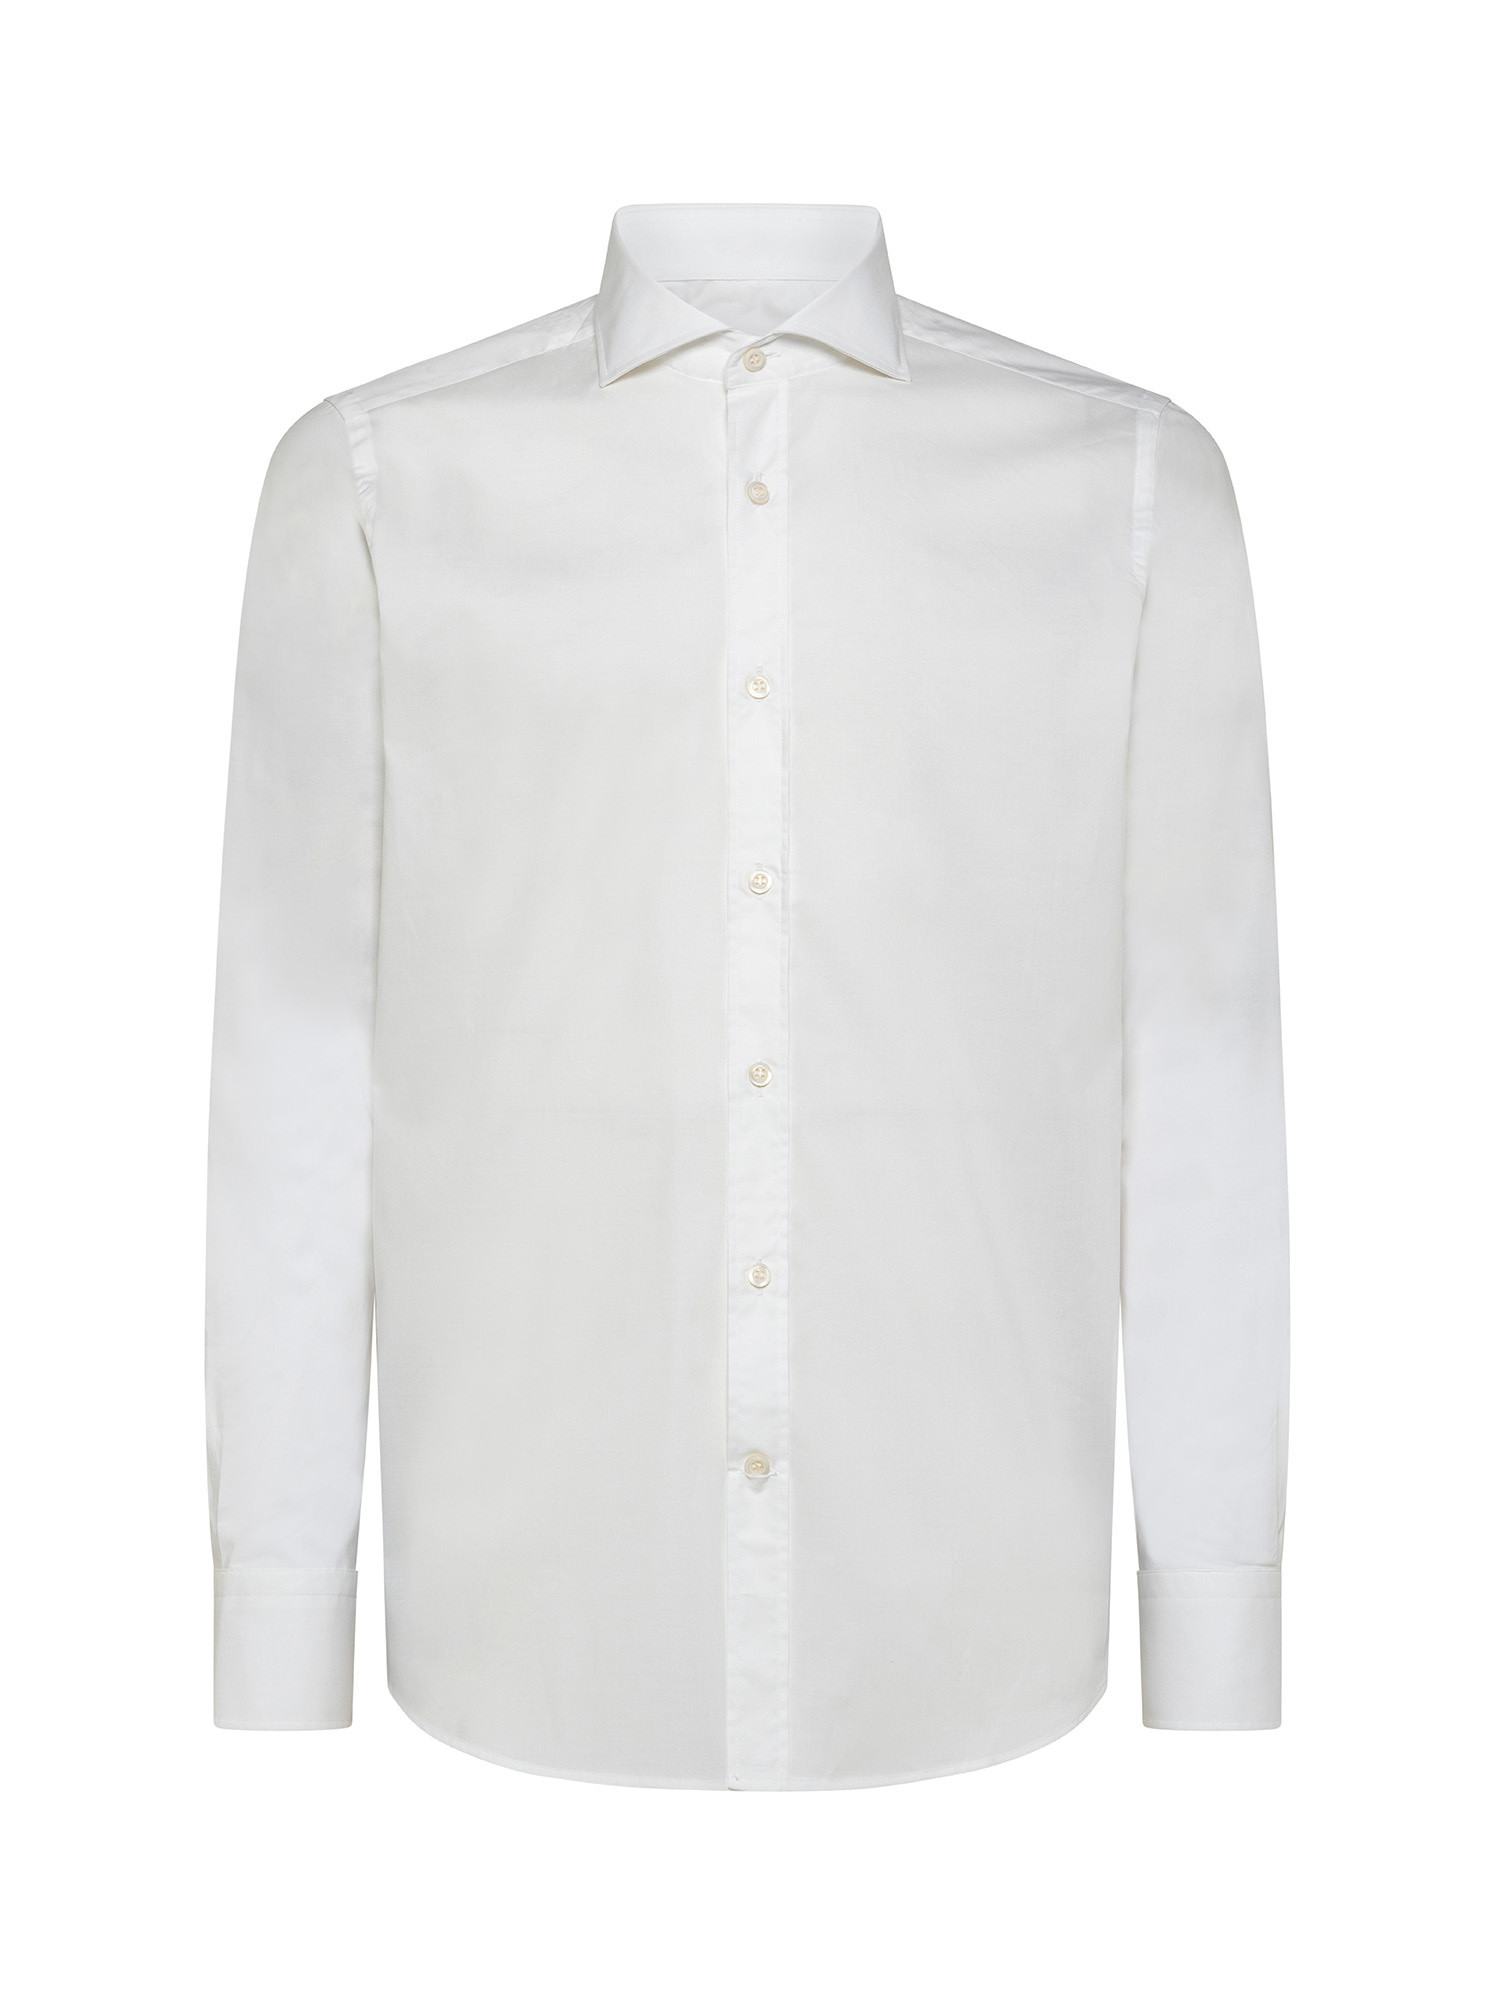 Camicia slim fit in cotone elasticizzato, Bianco, large image number 1